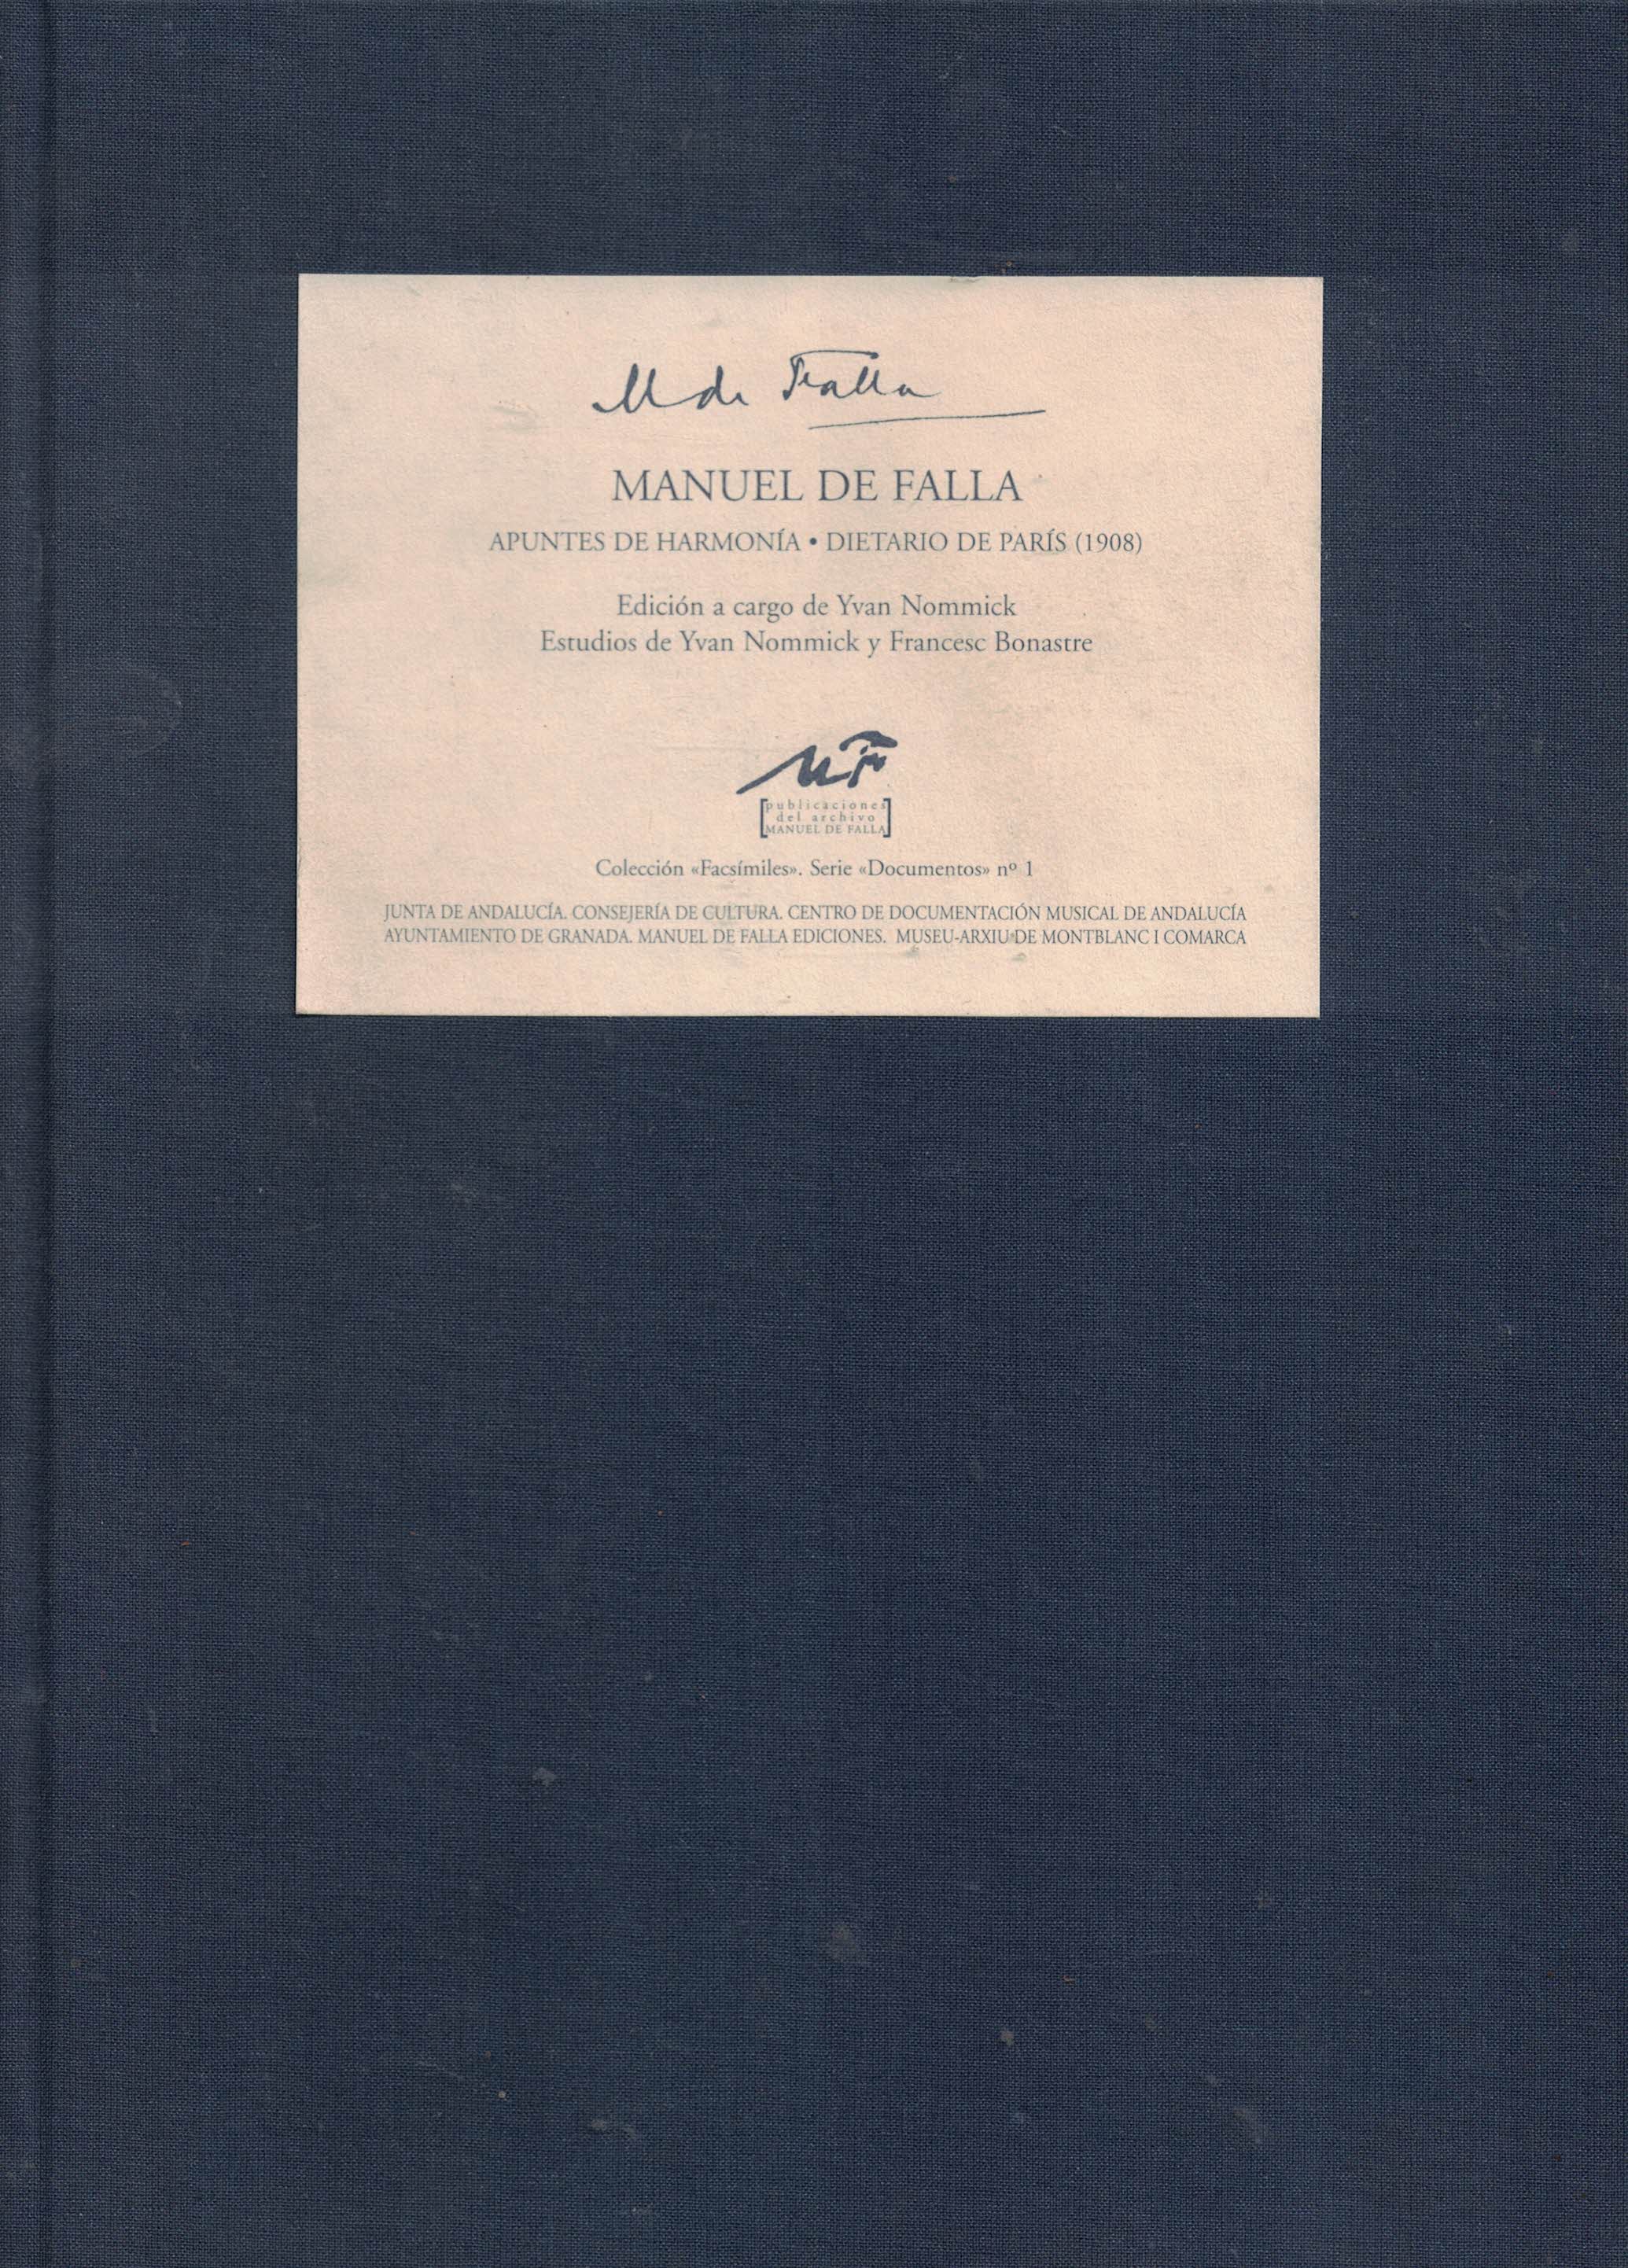 Apuntes de Harmonía - Dietario de París (1908)